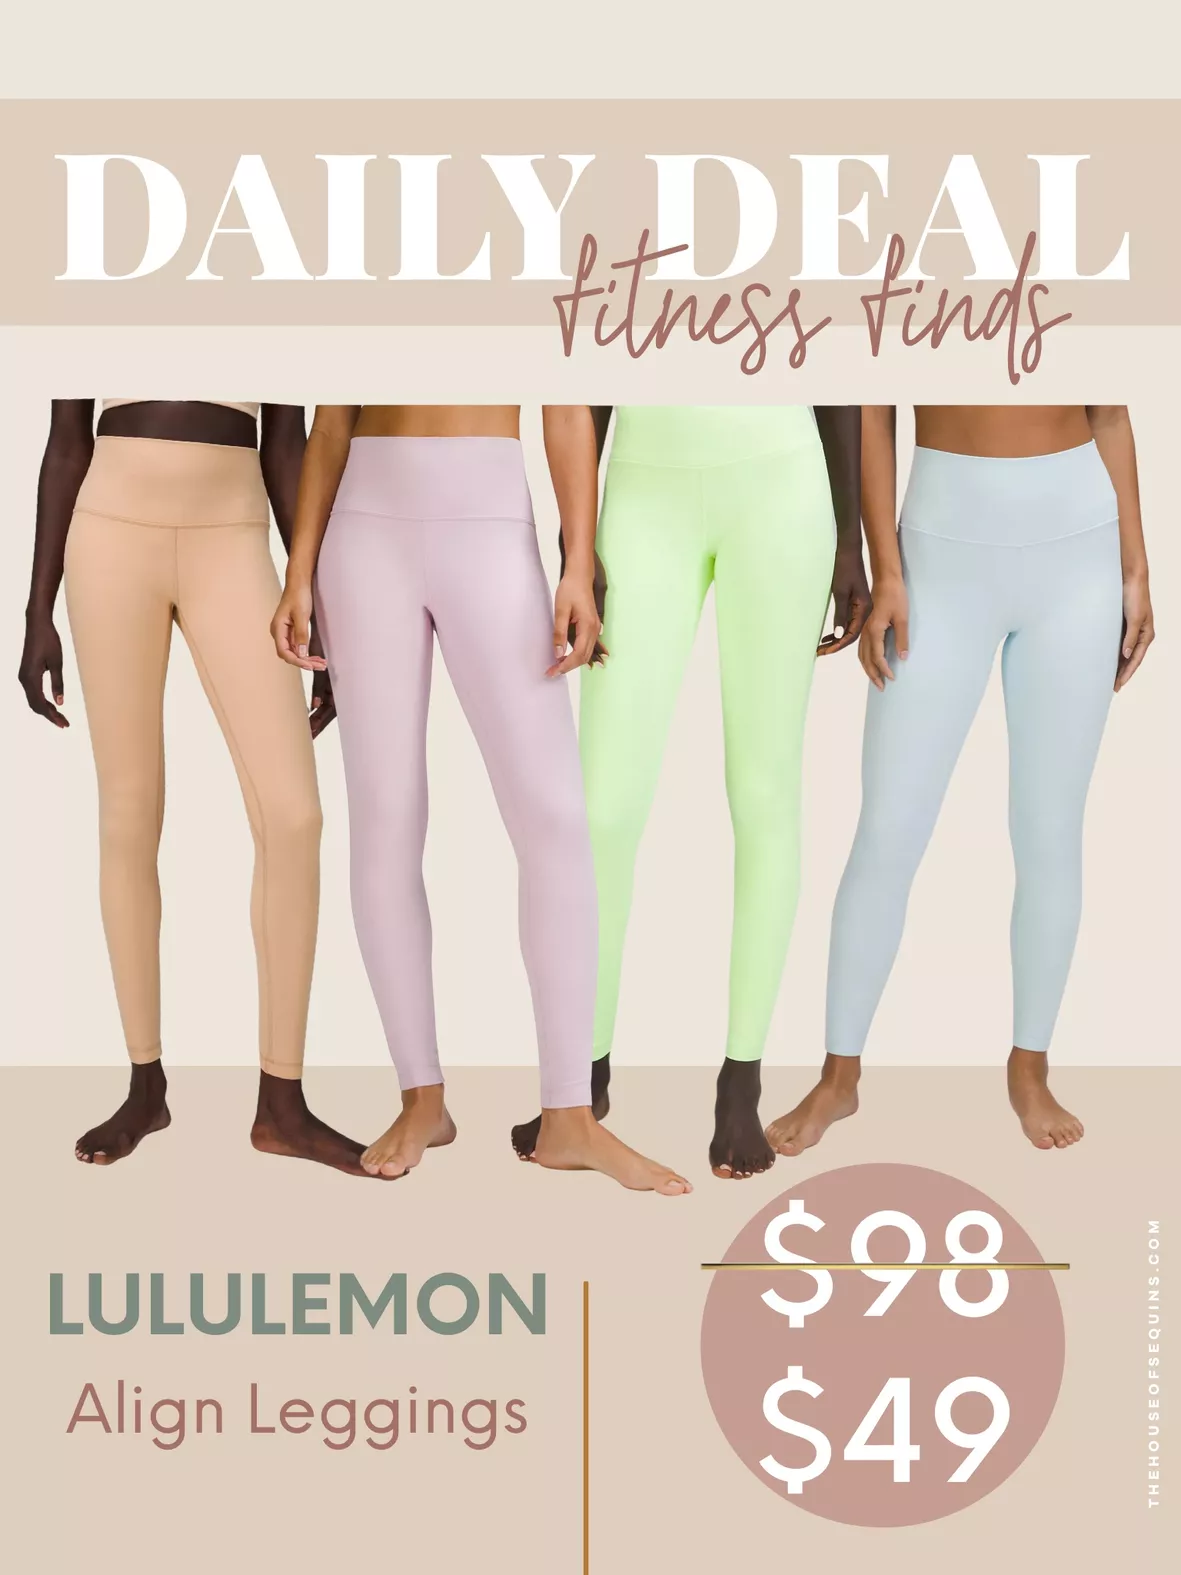 LULULEMON Align high-rise leggings - 28